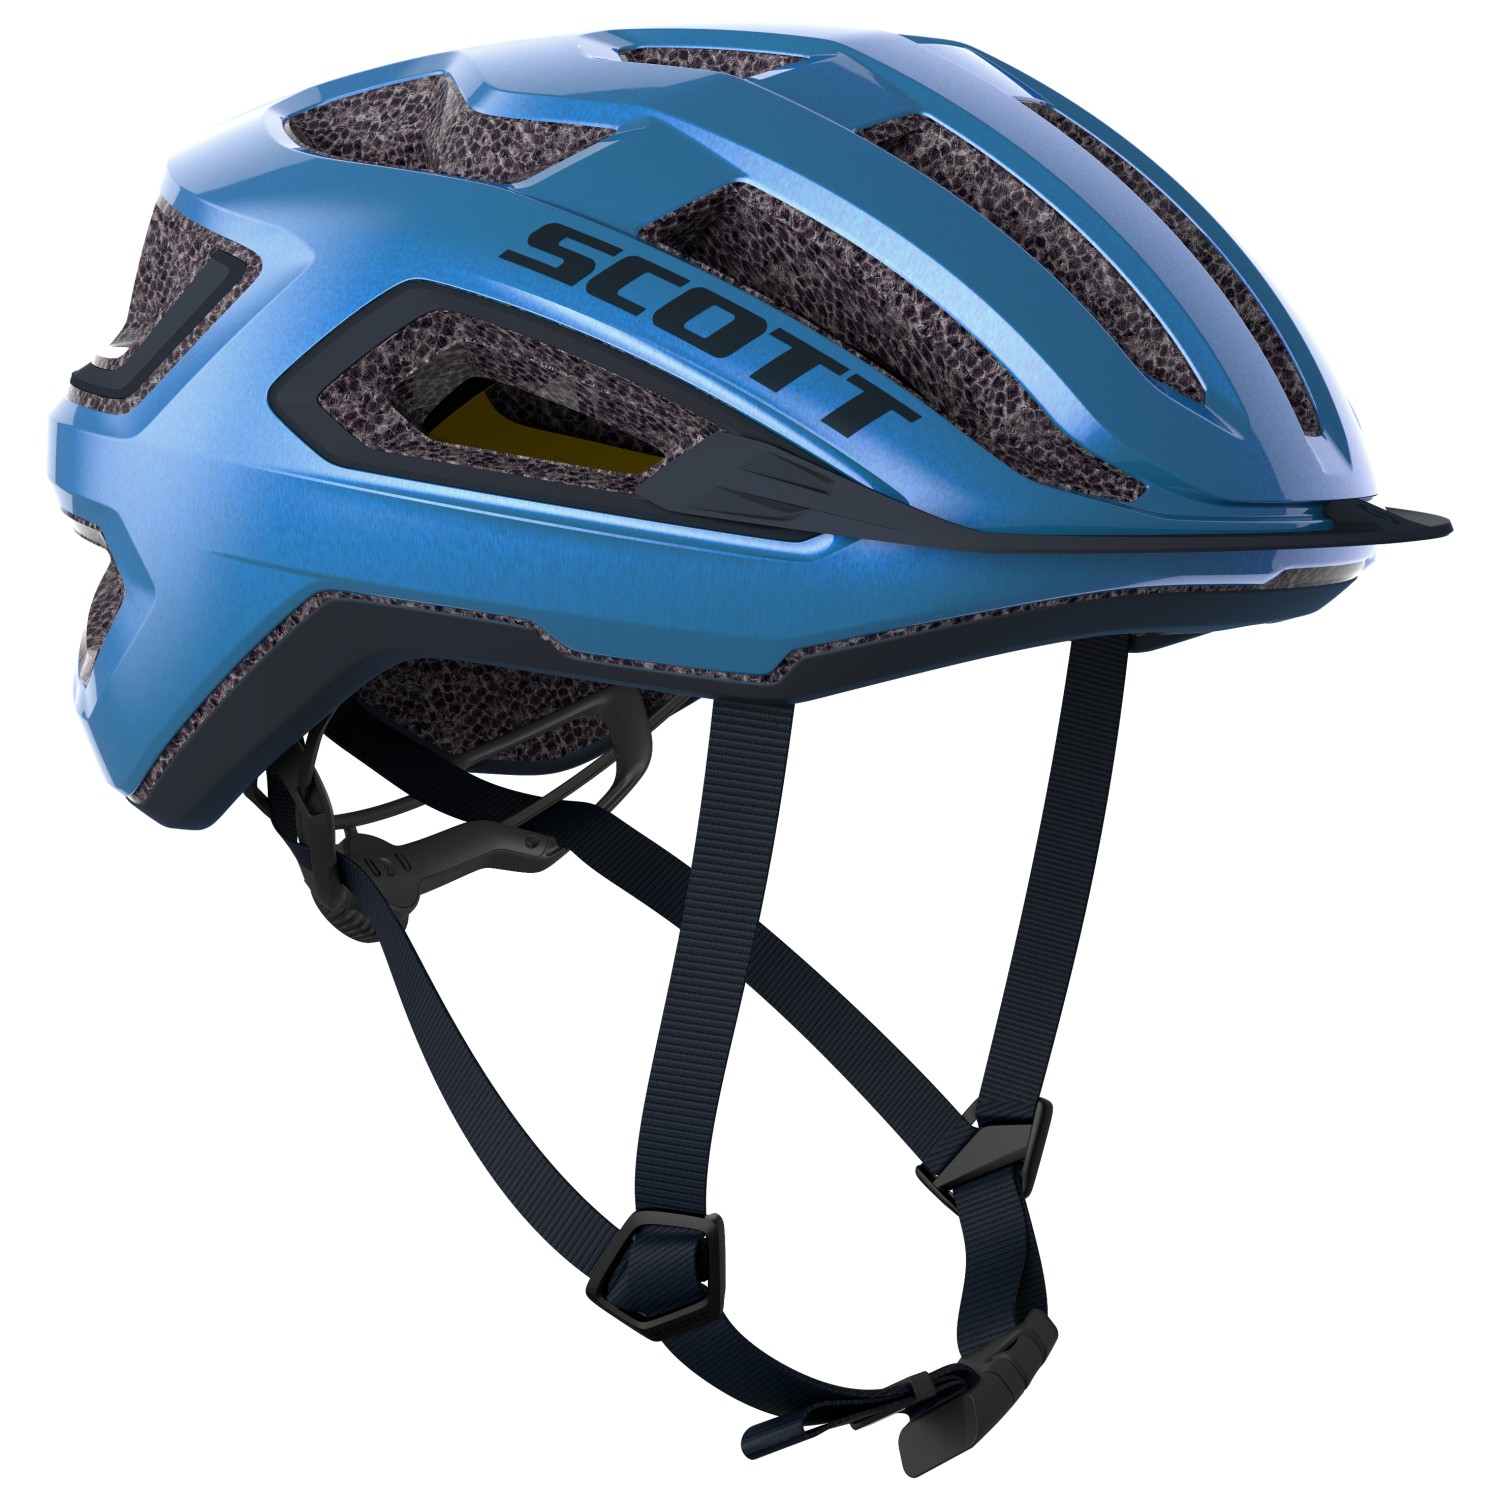 Велосипедный шлем Scott Helmet Arx Plus (CE), цвет Metal Blue шлем scott supra ce серый один размер 54 61см